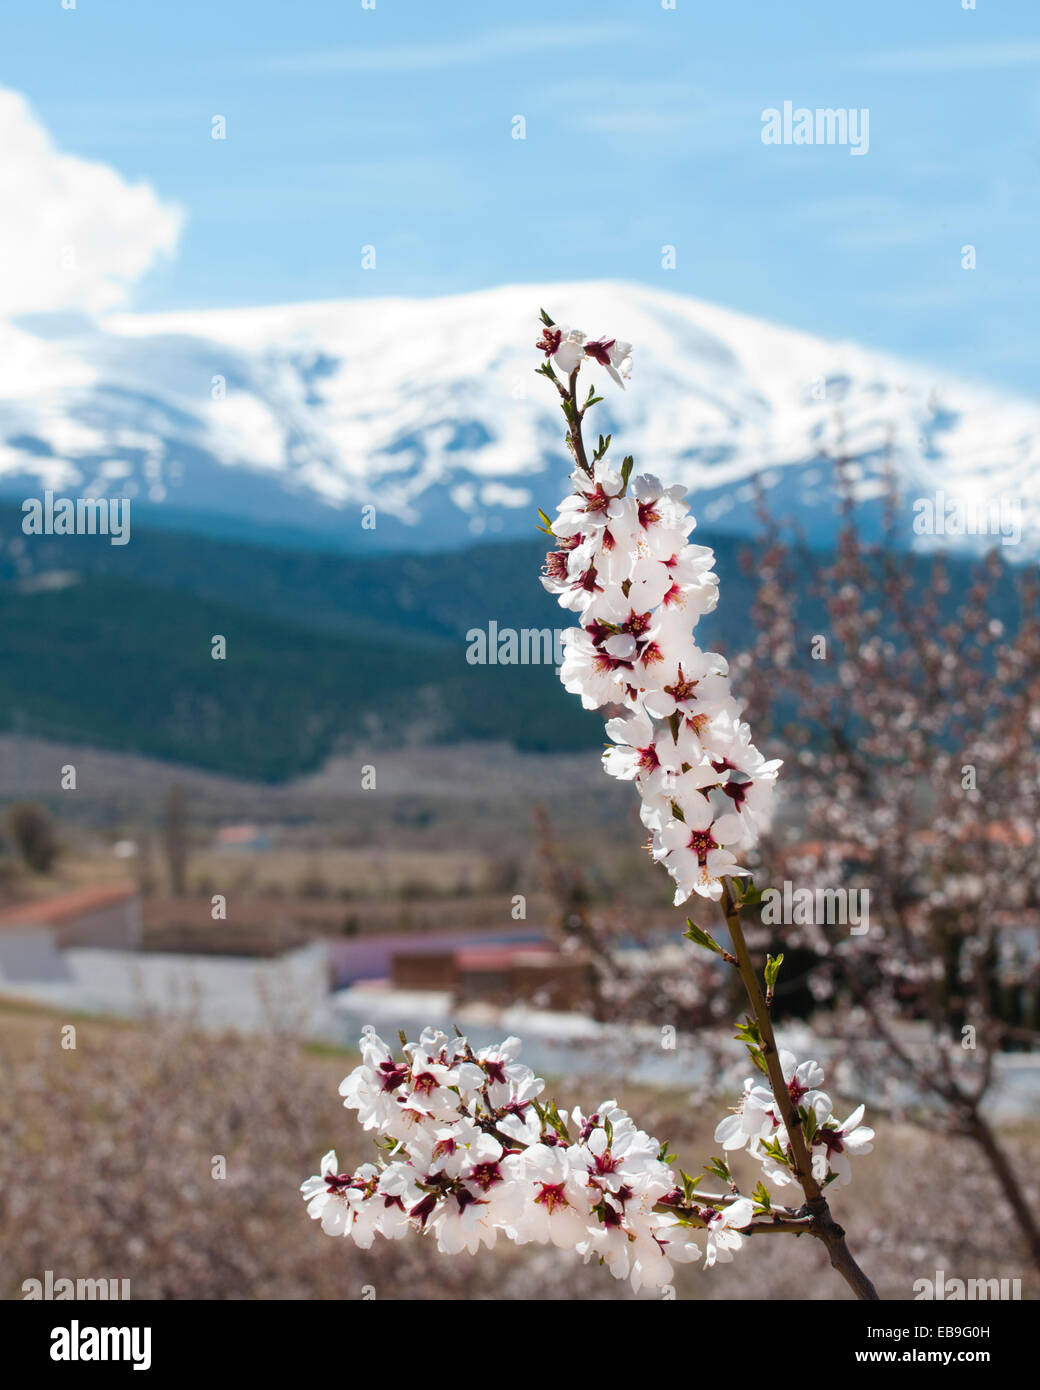 In primavera sbocciano i fiori di mandorla, Prunus dulcis, nella parte anteriore della coperta di neve a Sierra Nevada in Spagna meridionale. Foto Stock